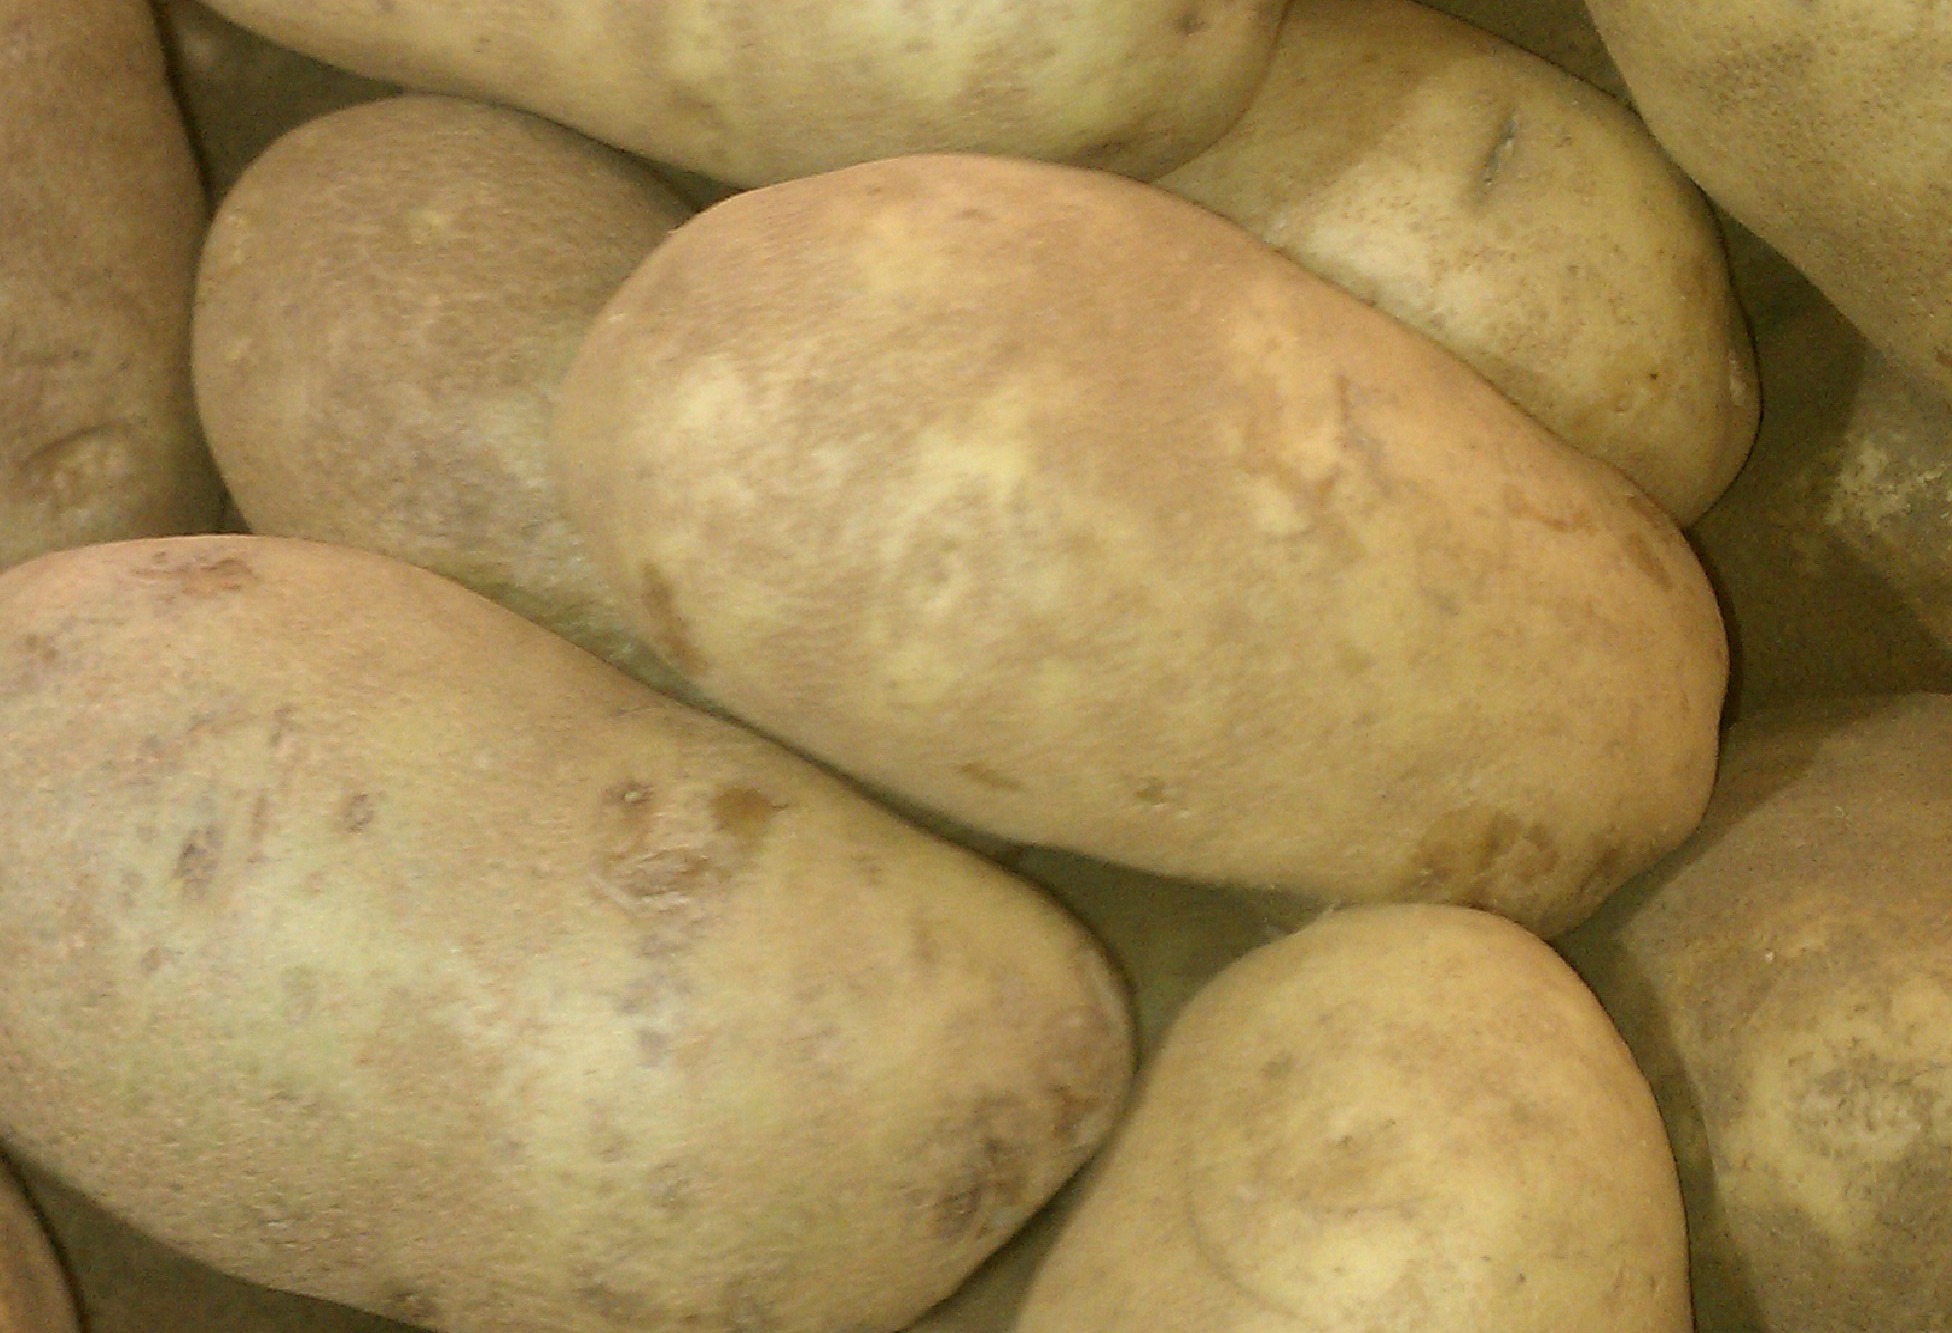 russett potatoes